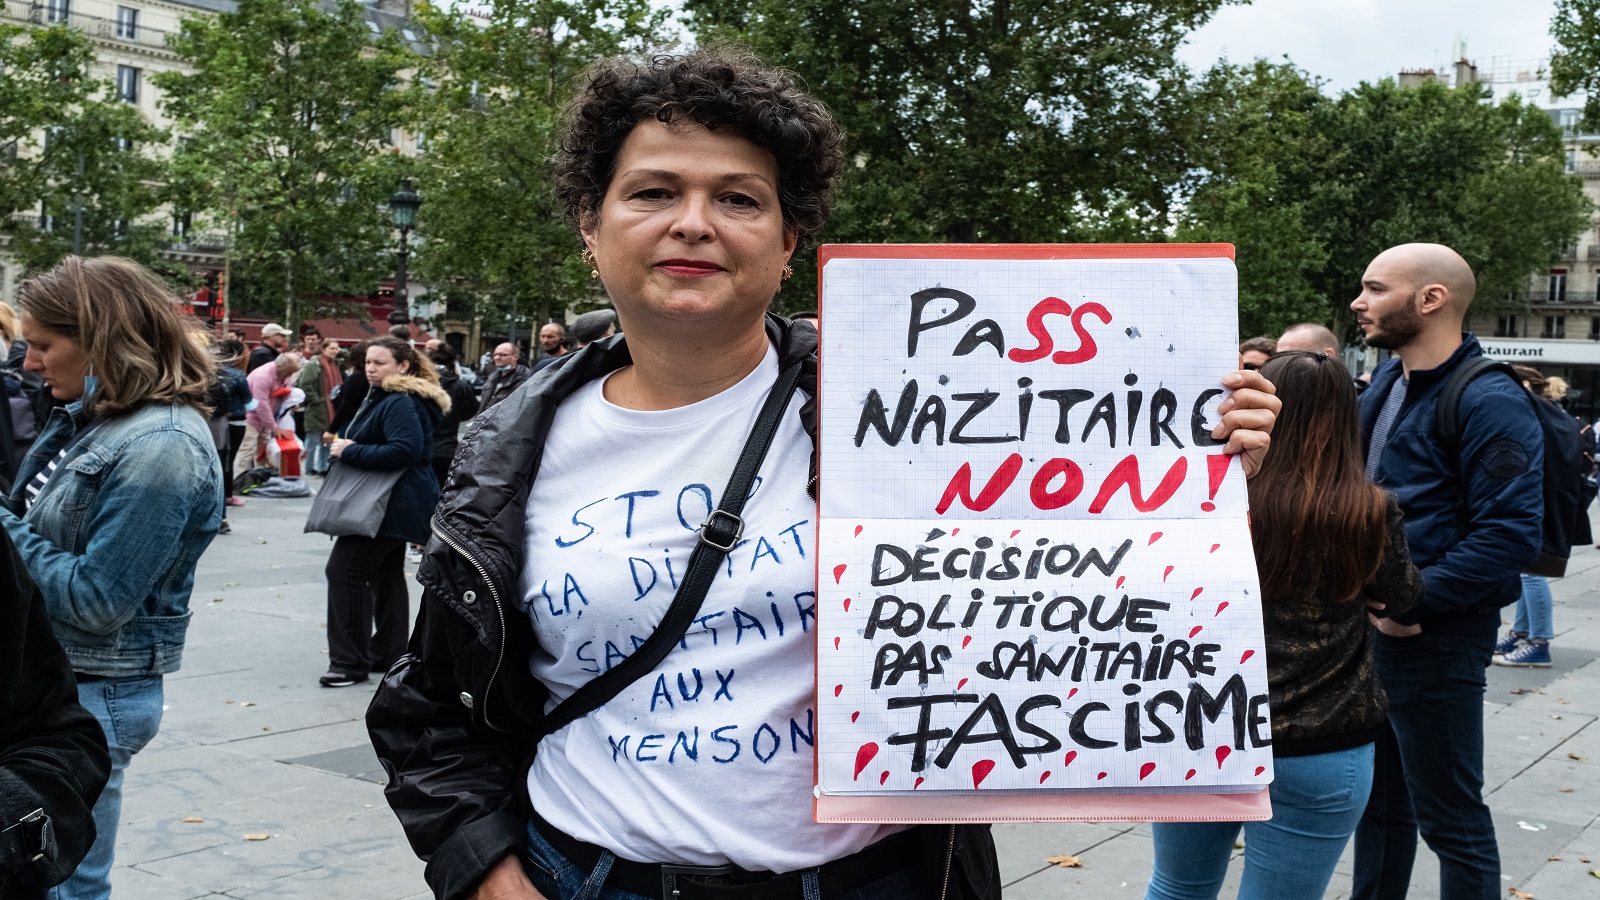 تظاهرات فرنسيين ضد البطاقة الصحية: "لا للبطاقة النازية، لا للفاشية" (غيتي)